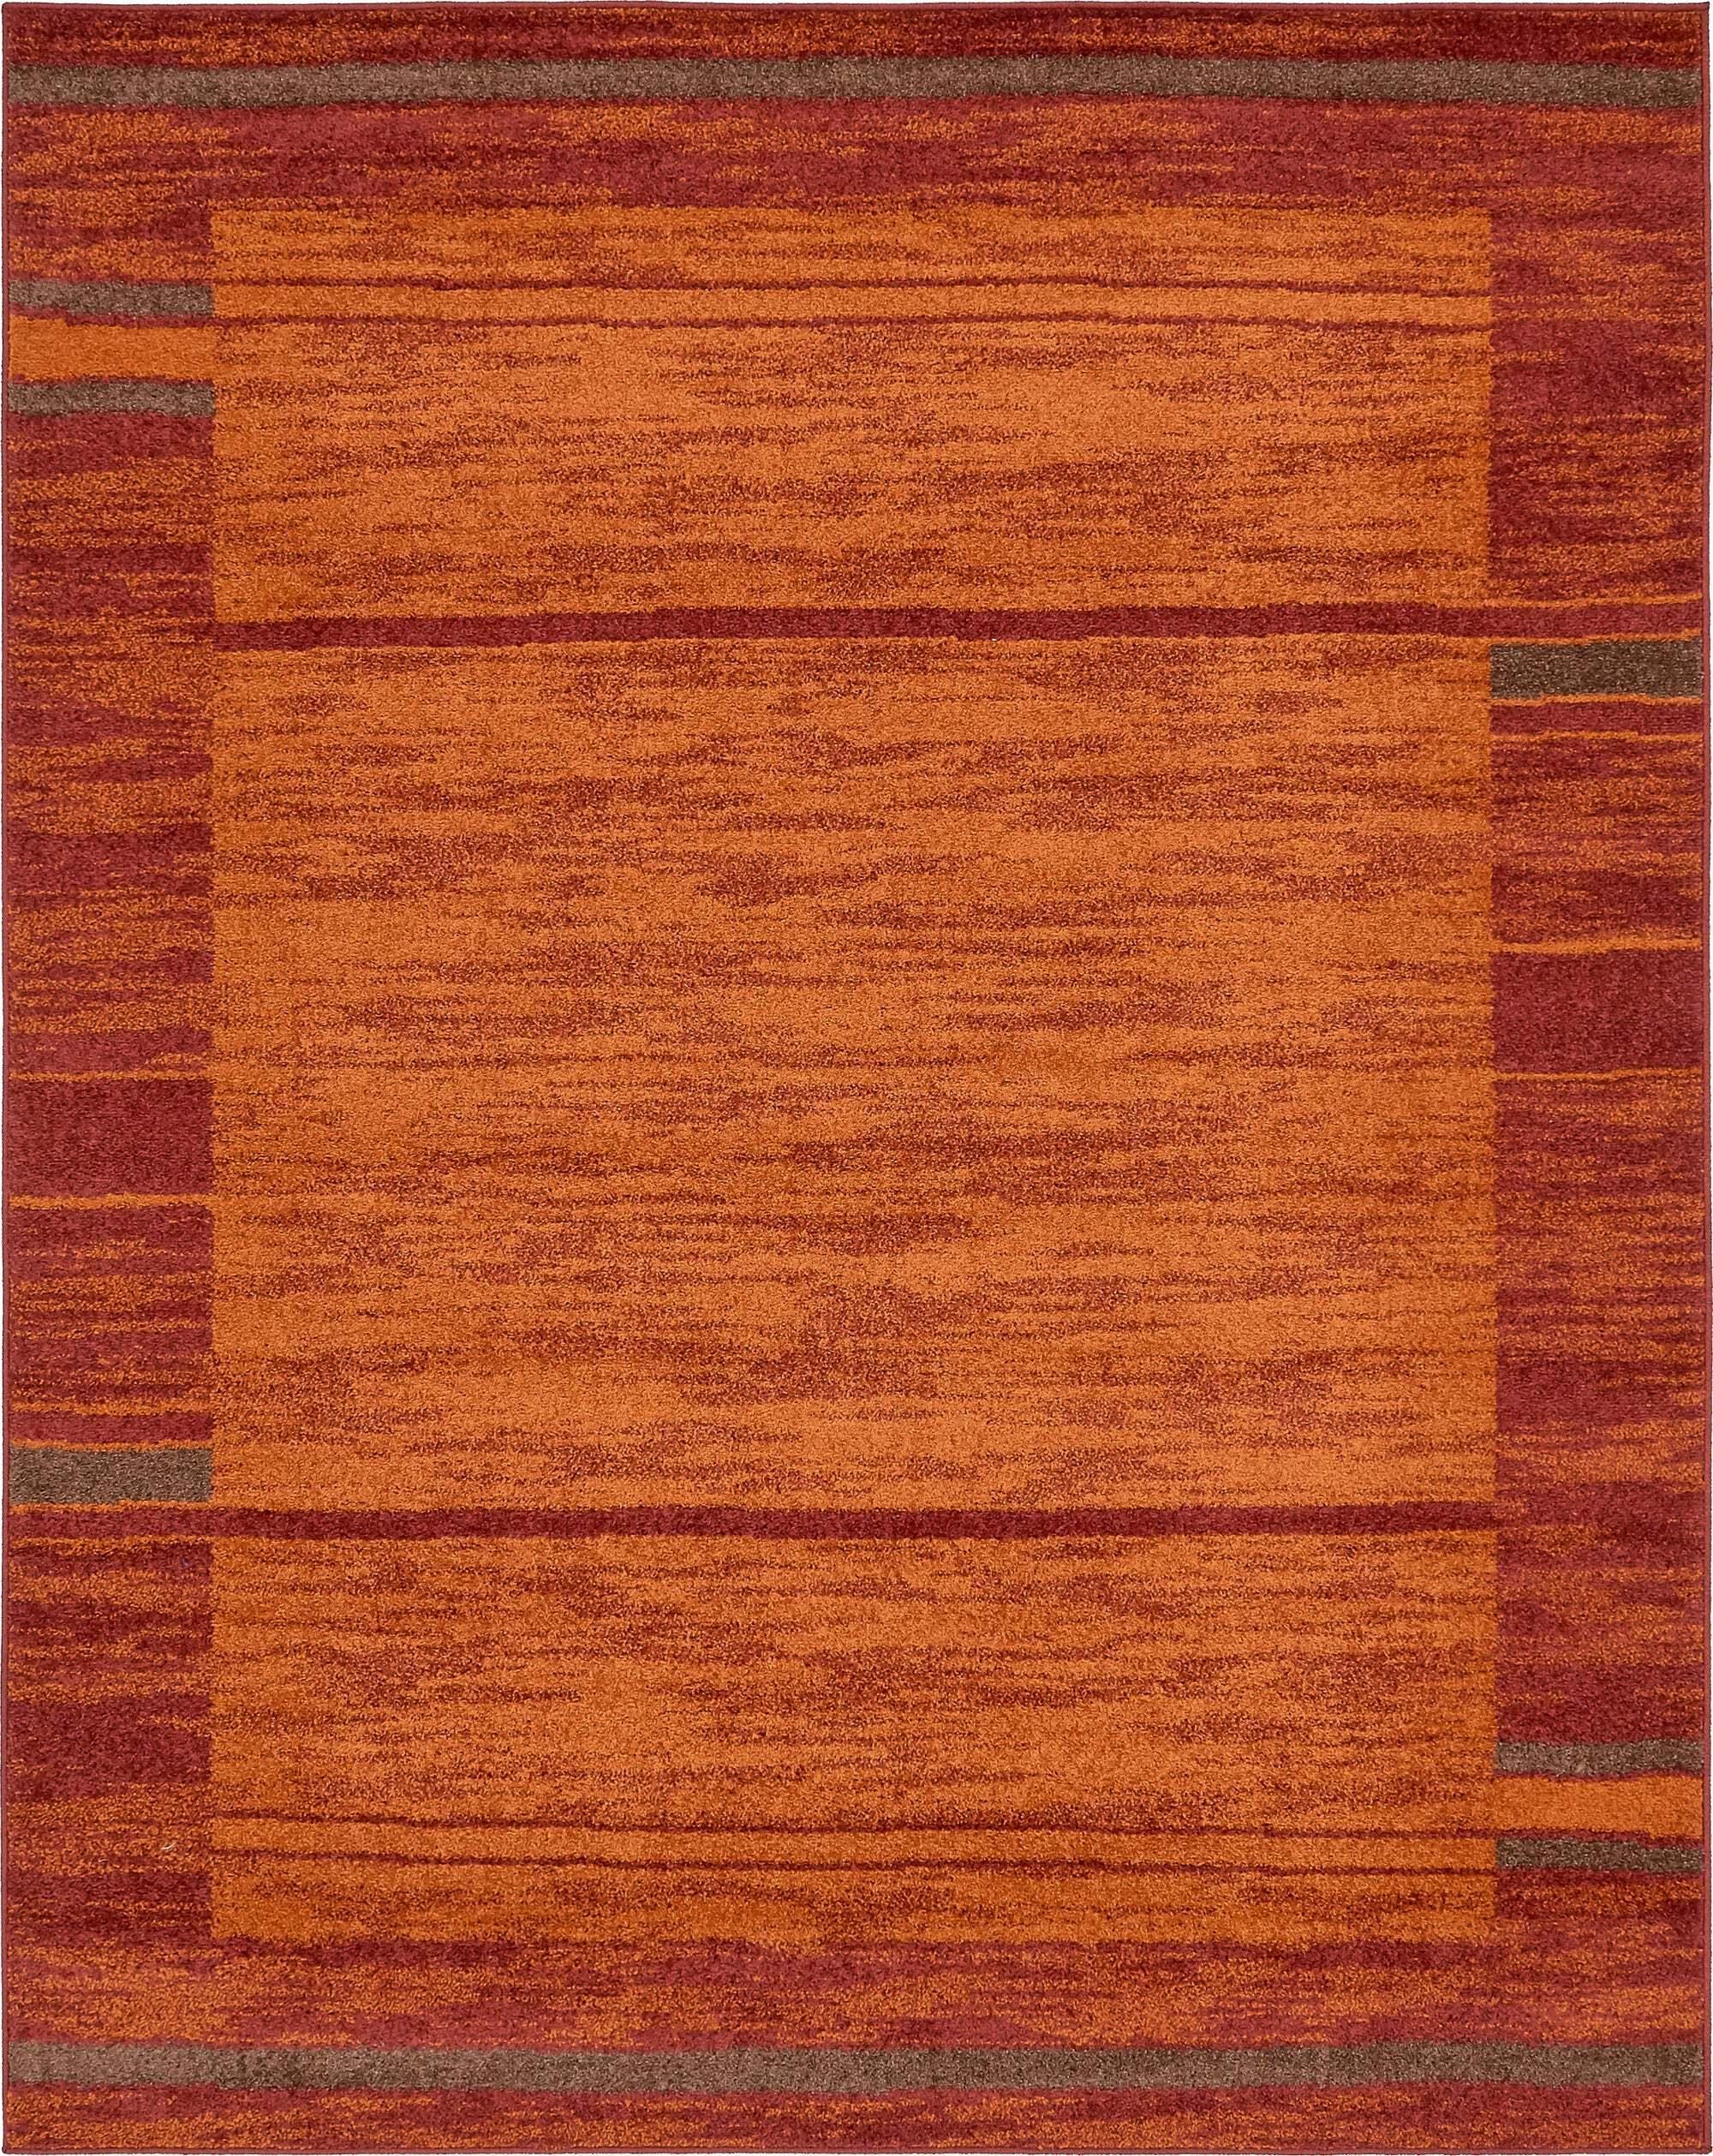 Unique Loom Indoor Rugs - Autumn Striped Rectangular 8x10 Rug Terracotta & Burgundy